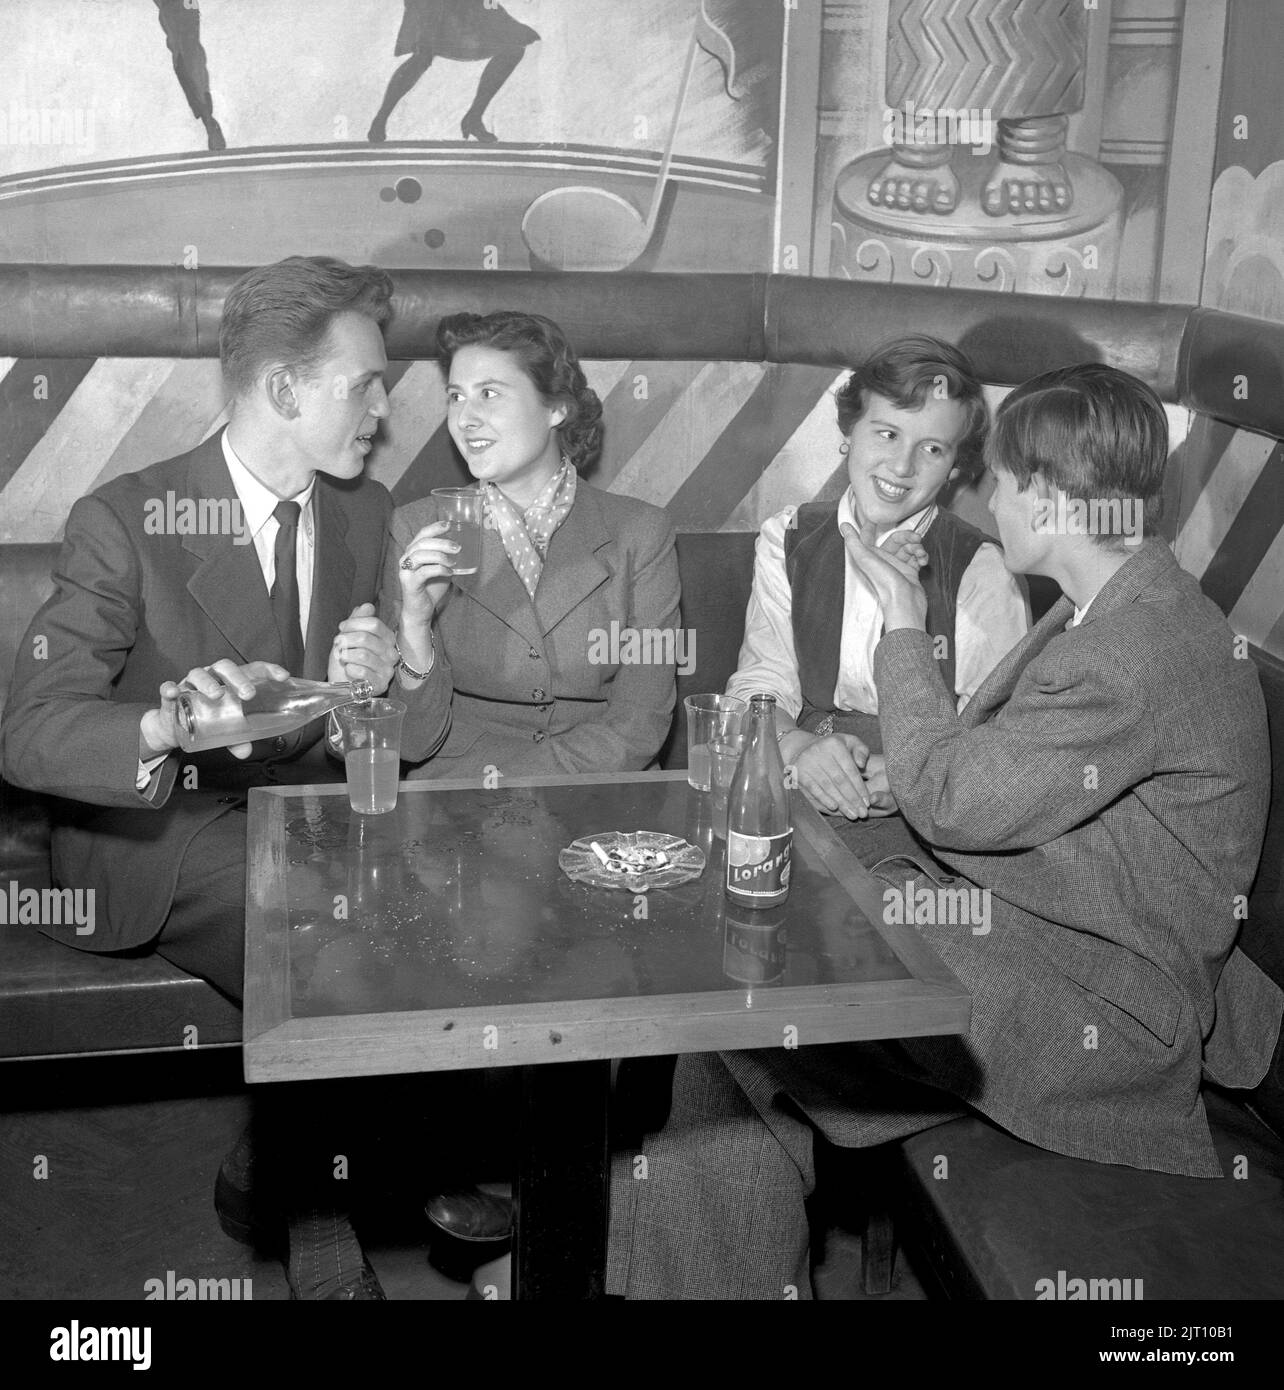 In der 1950s. Zwei junge Paare in der Bar im Nalen Dance Establishment in Stockholm, die damals keine alkoholischen Getränke erlaubten. Rauchen ist jedoch in Ordnung. Schweden 1951 Conard Ref. 1871 Stockfoto